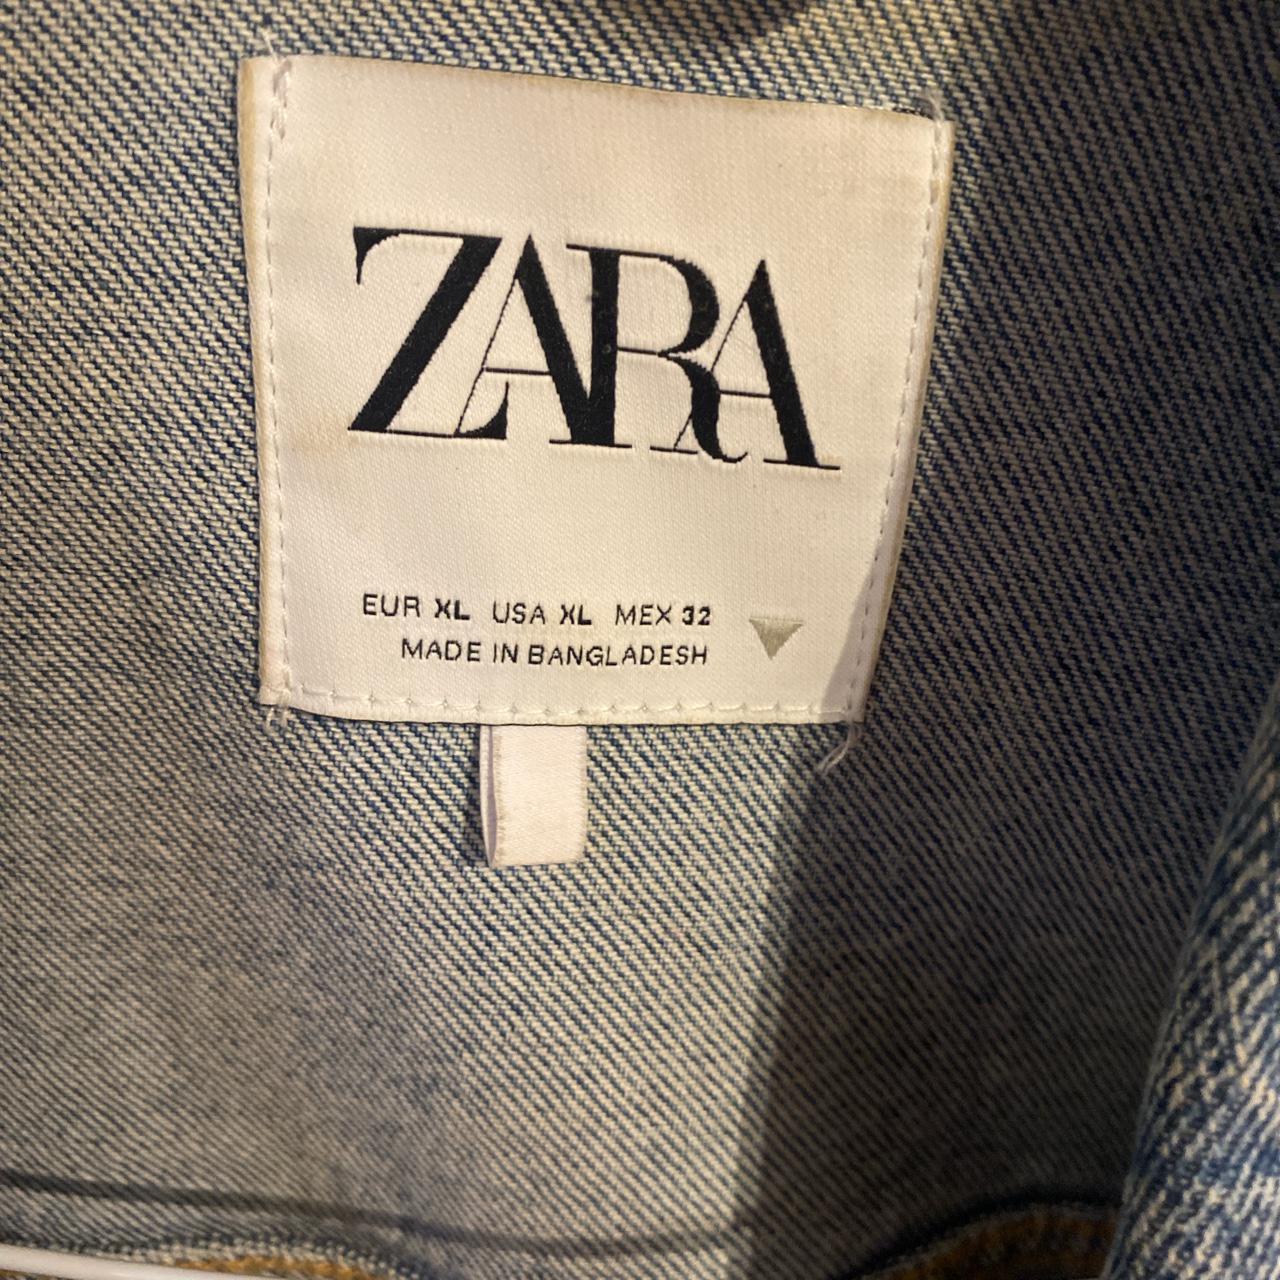 Zara denim jacket. Perfect condition, worn once.... - Depop